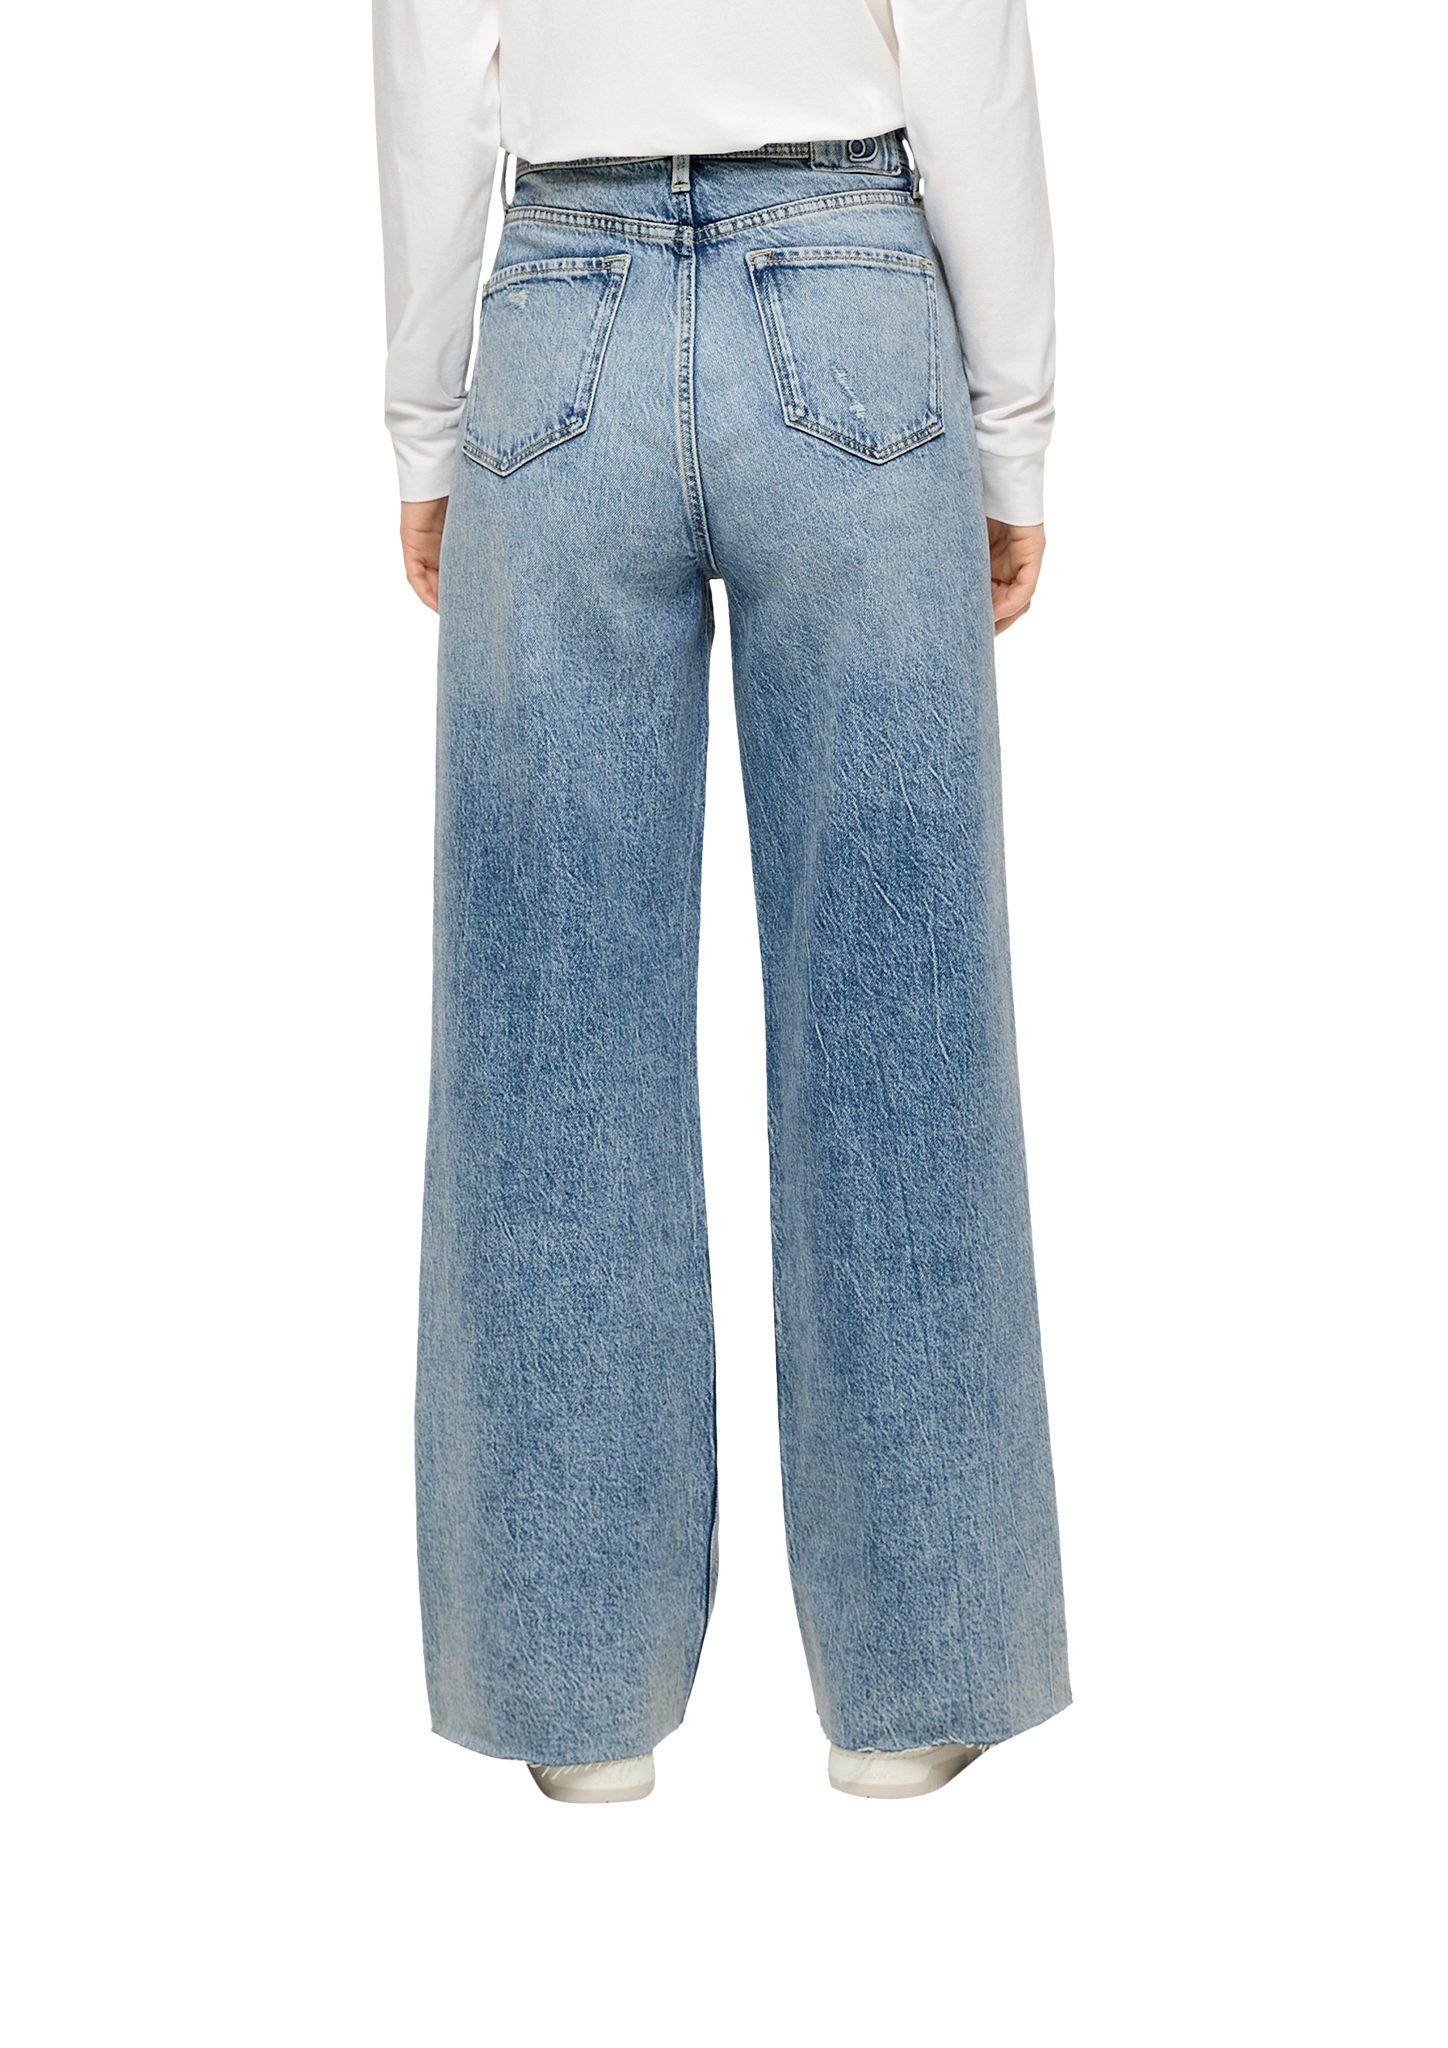 Jeans s.Oliver / / Suri / Leg Rise Wide Destroyes Regular Fit Label-Patch, High 5-Pocket-Jeans